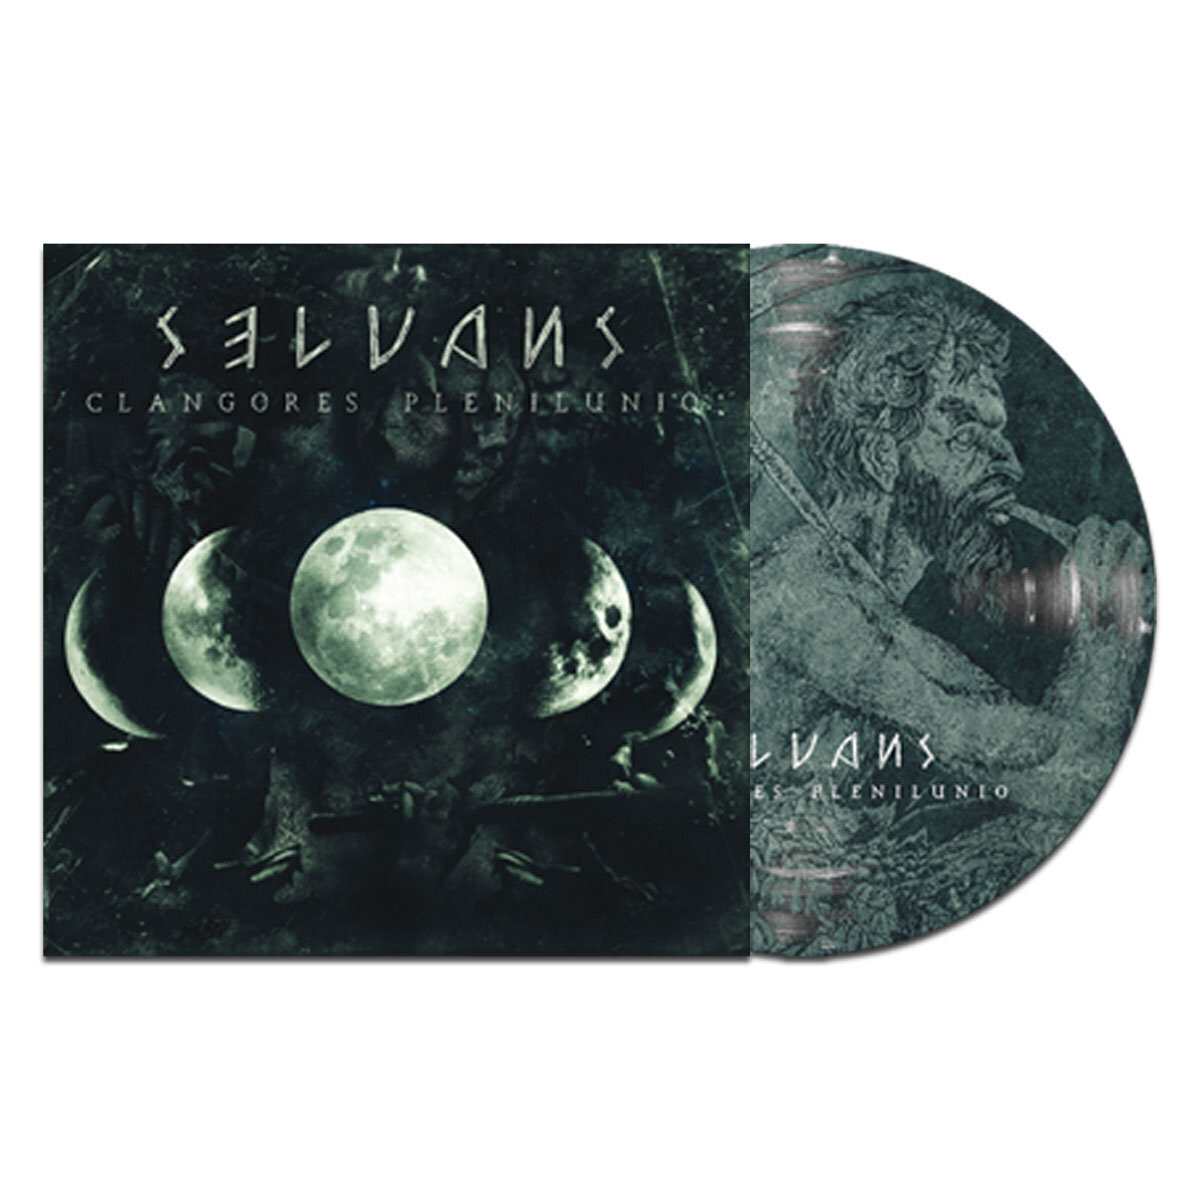 Selvans - Clangores Plenilunio (picutre disc)